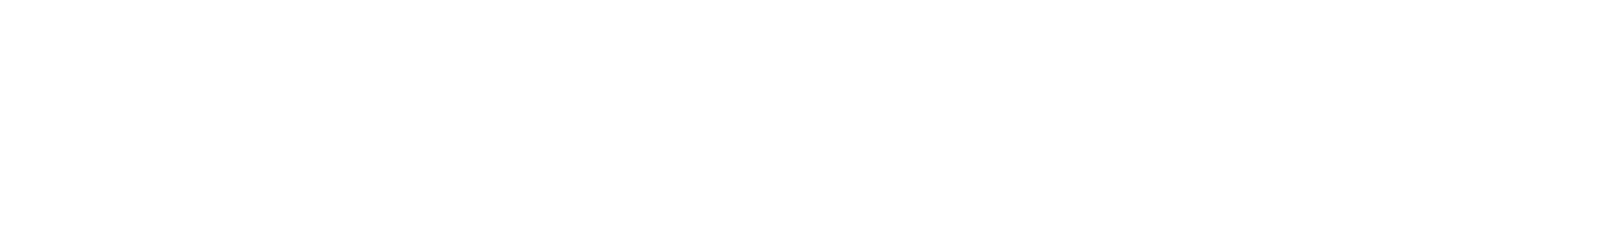 GEOX logo grand pour les fonds sombres (PNG transparent)